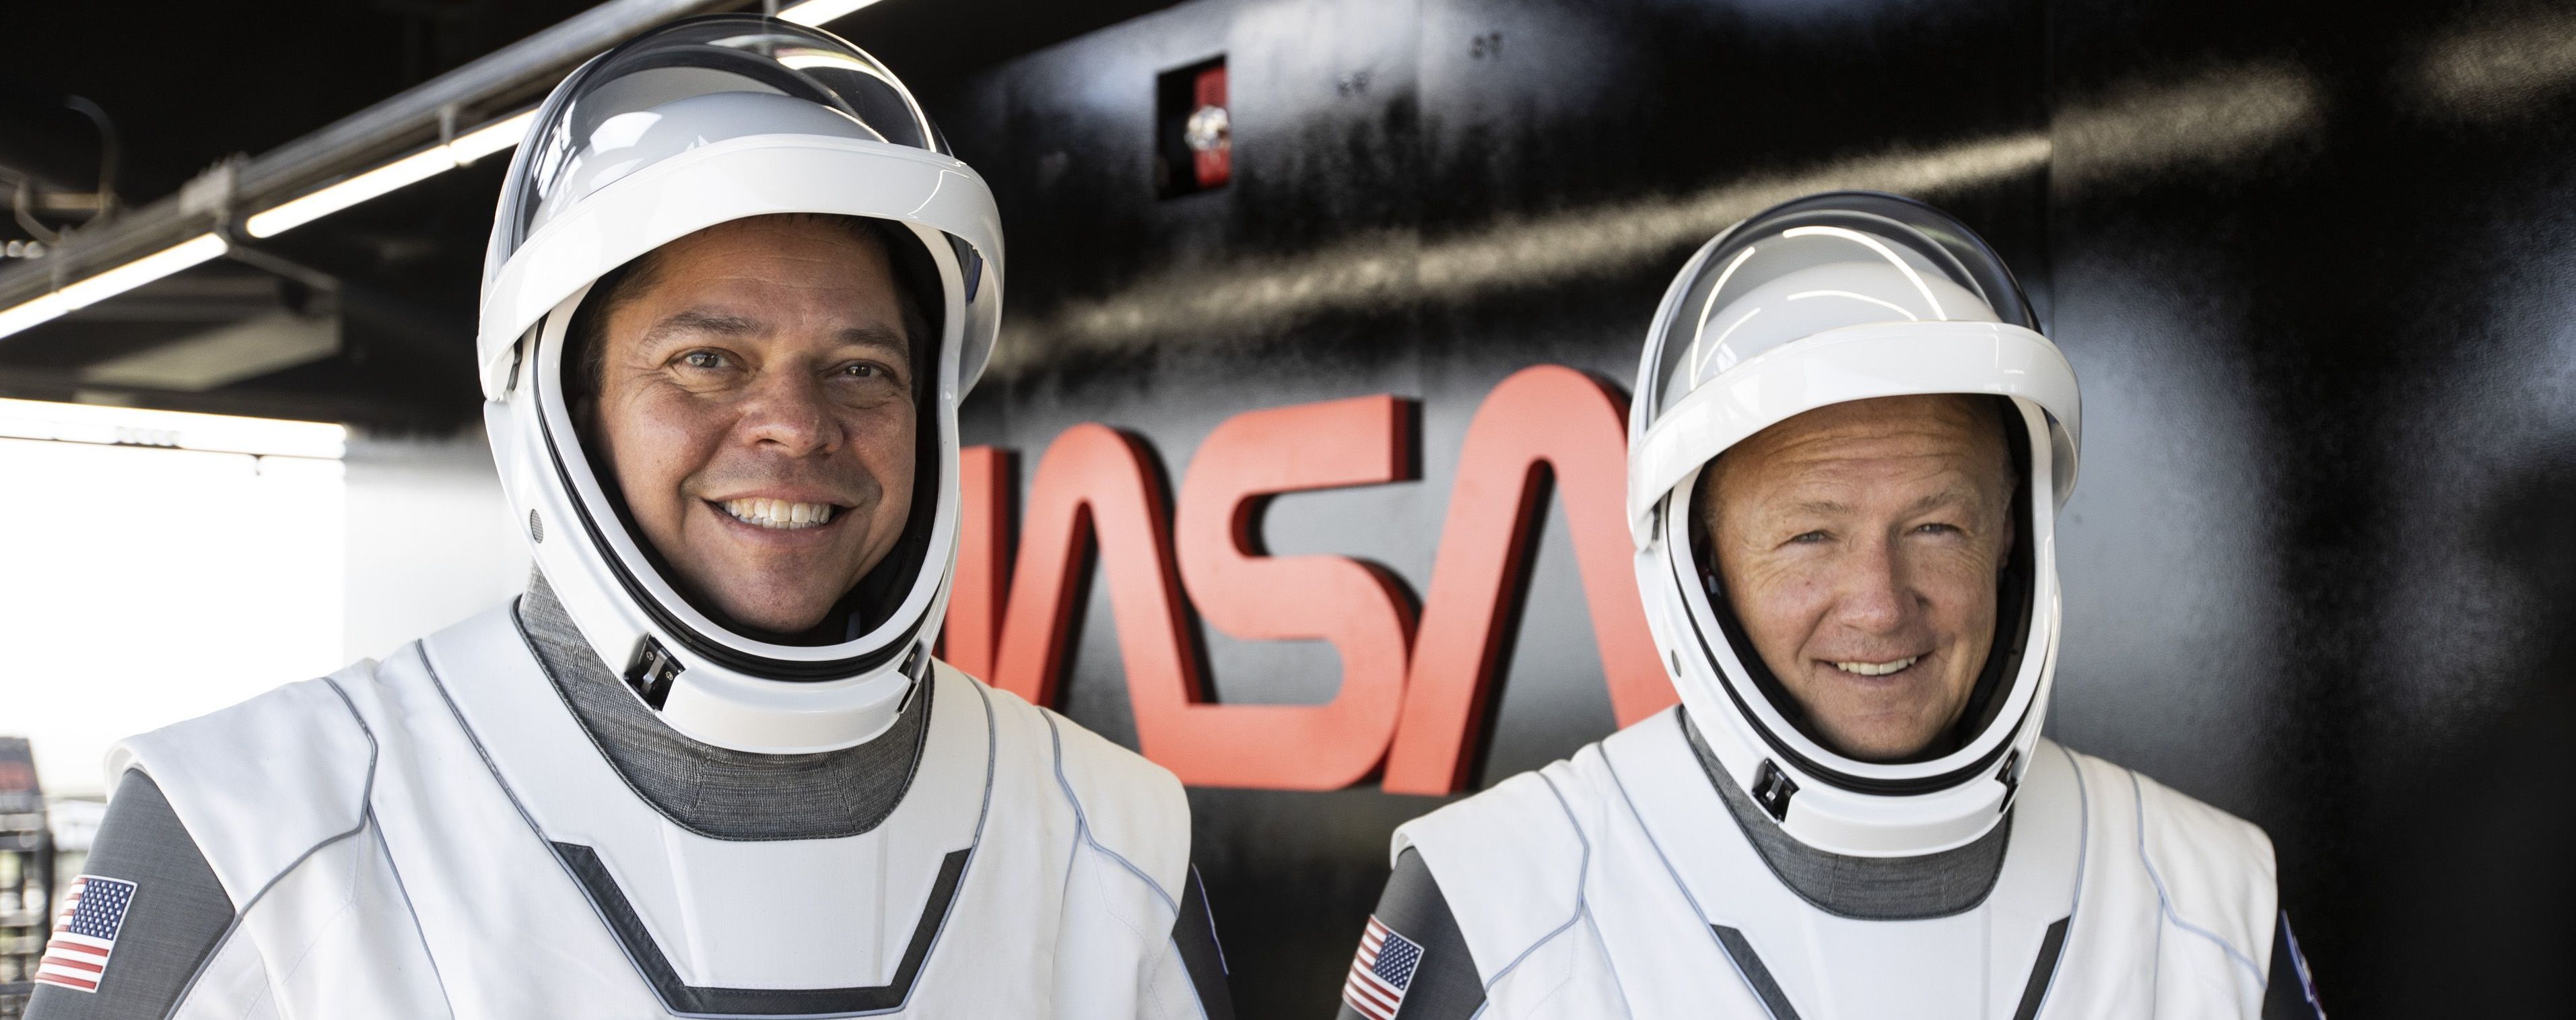 Американские астронавты на Crew Dragon успешно пристыковались к МКС - видео